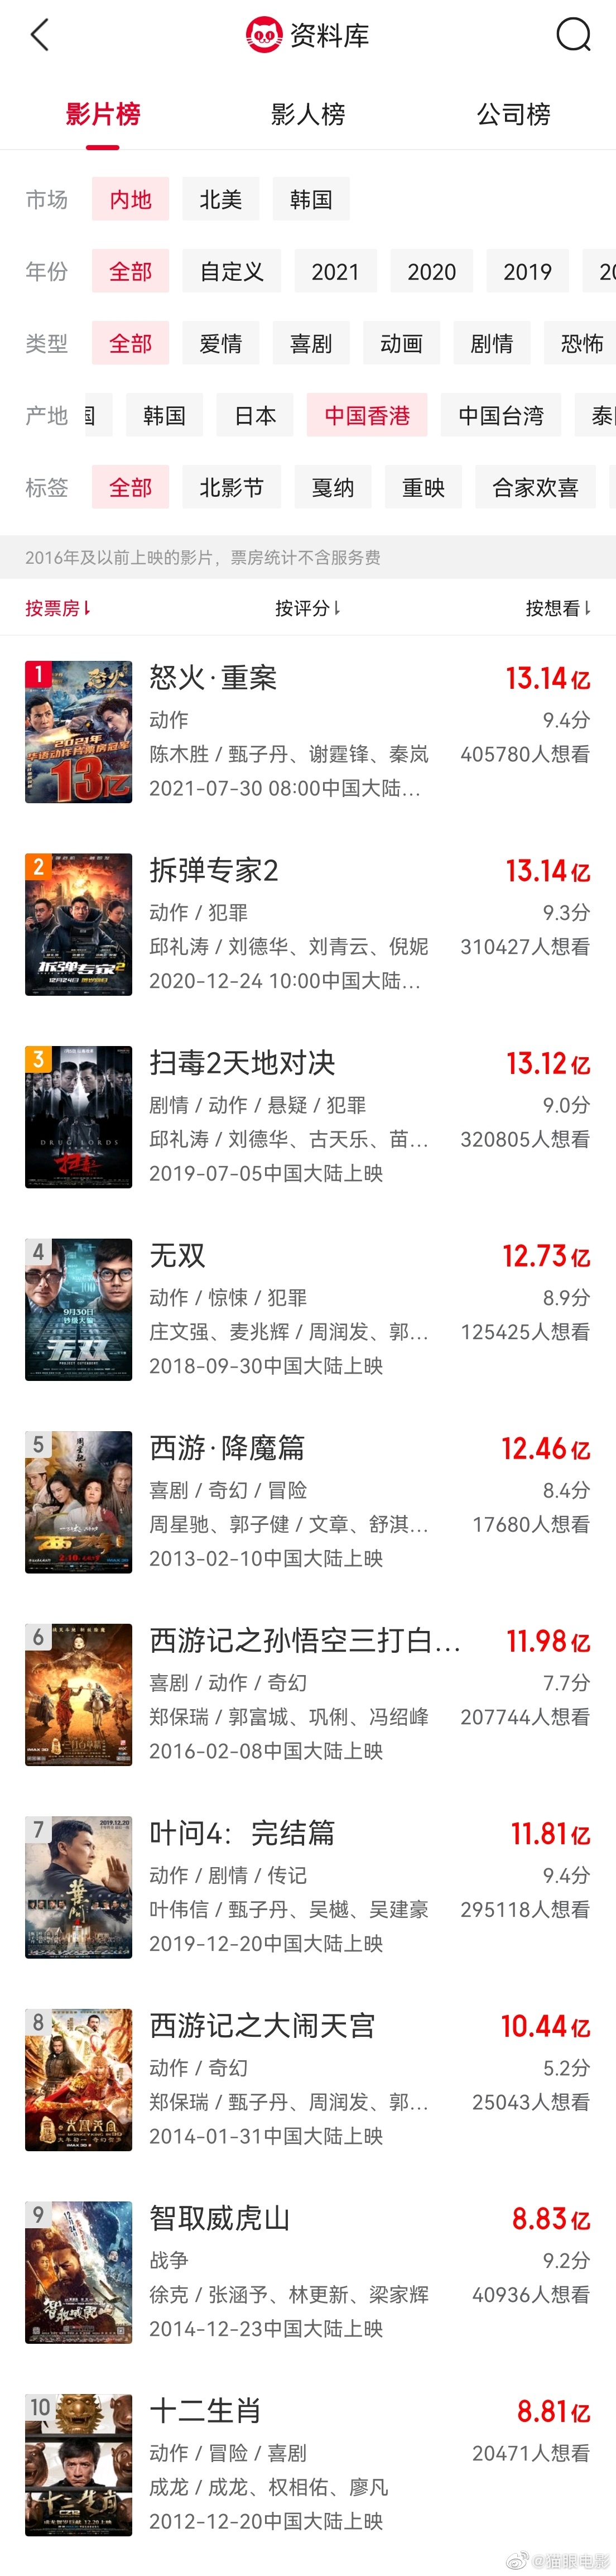 《怒火重案》内地票房超13.14亿 成中国影史港片票房冠军